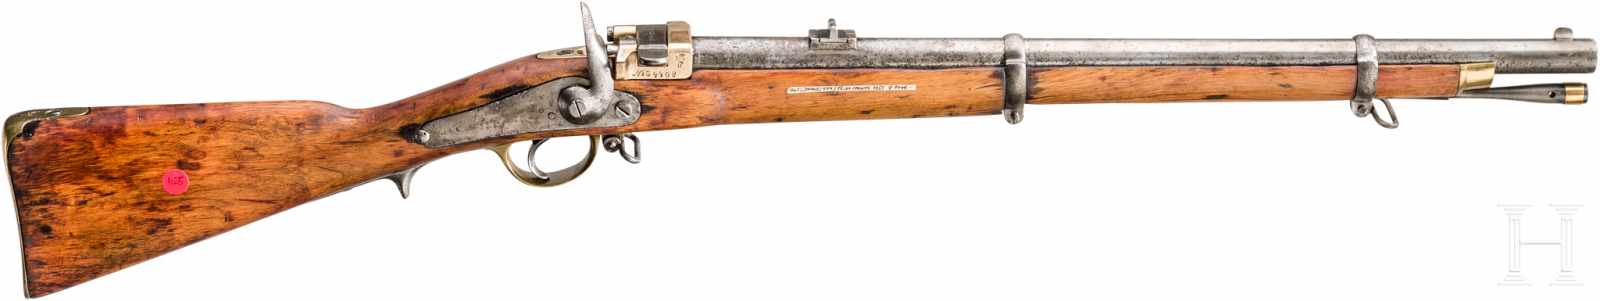 M 1857/67 Krnka Kurzgewehr IschewskKal. 15,24mm Krnka, Nr. 34408, Aptiert aus einer M 1857